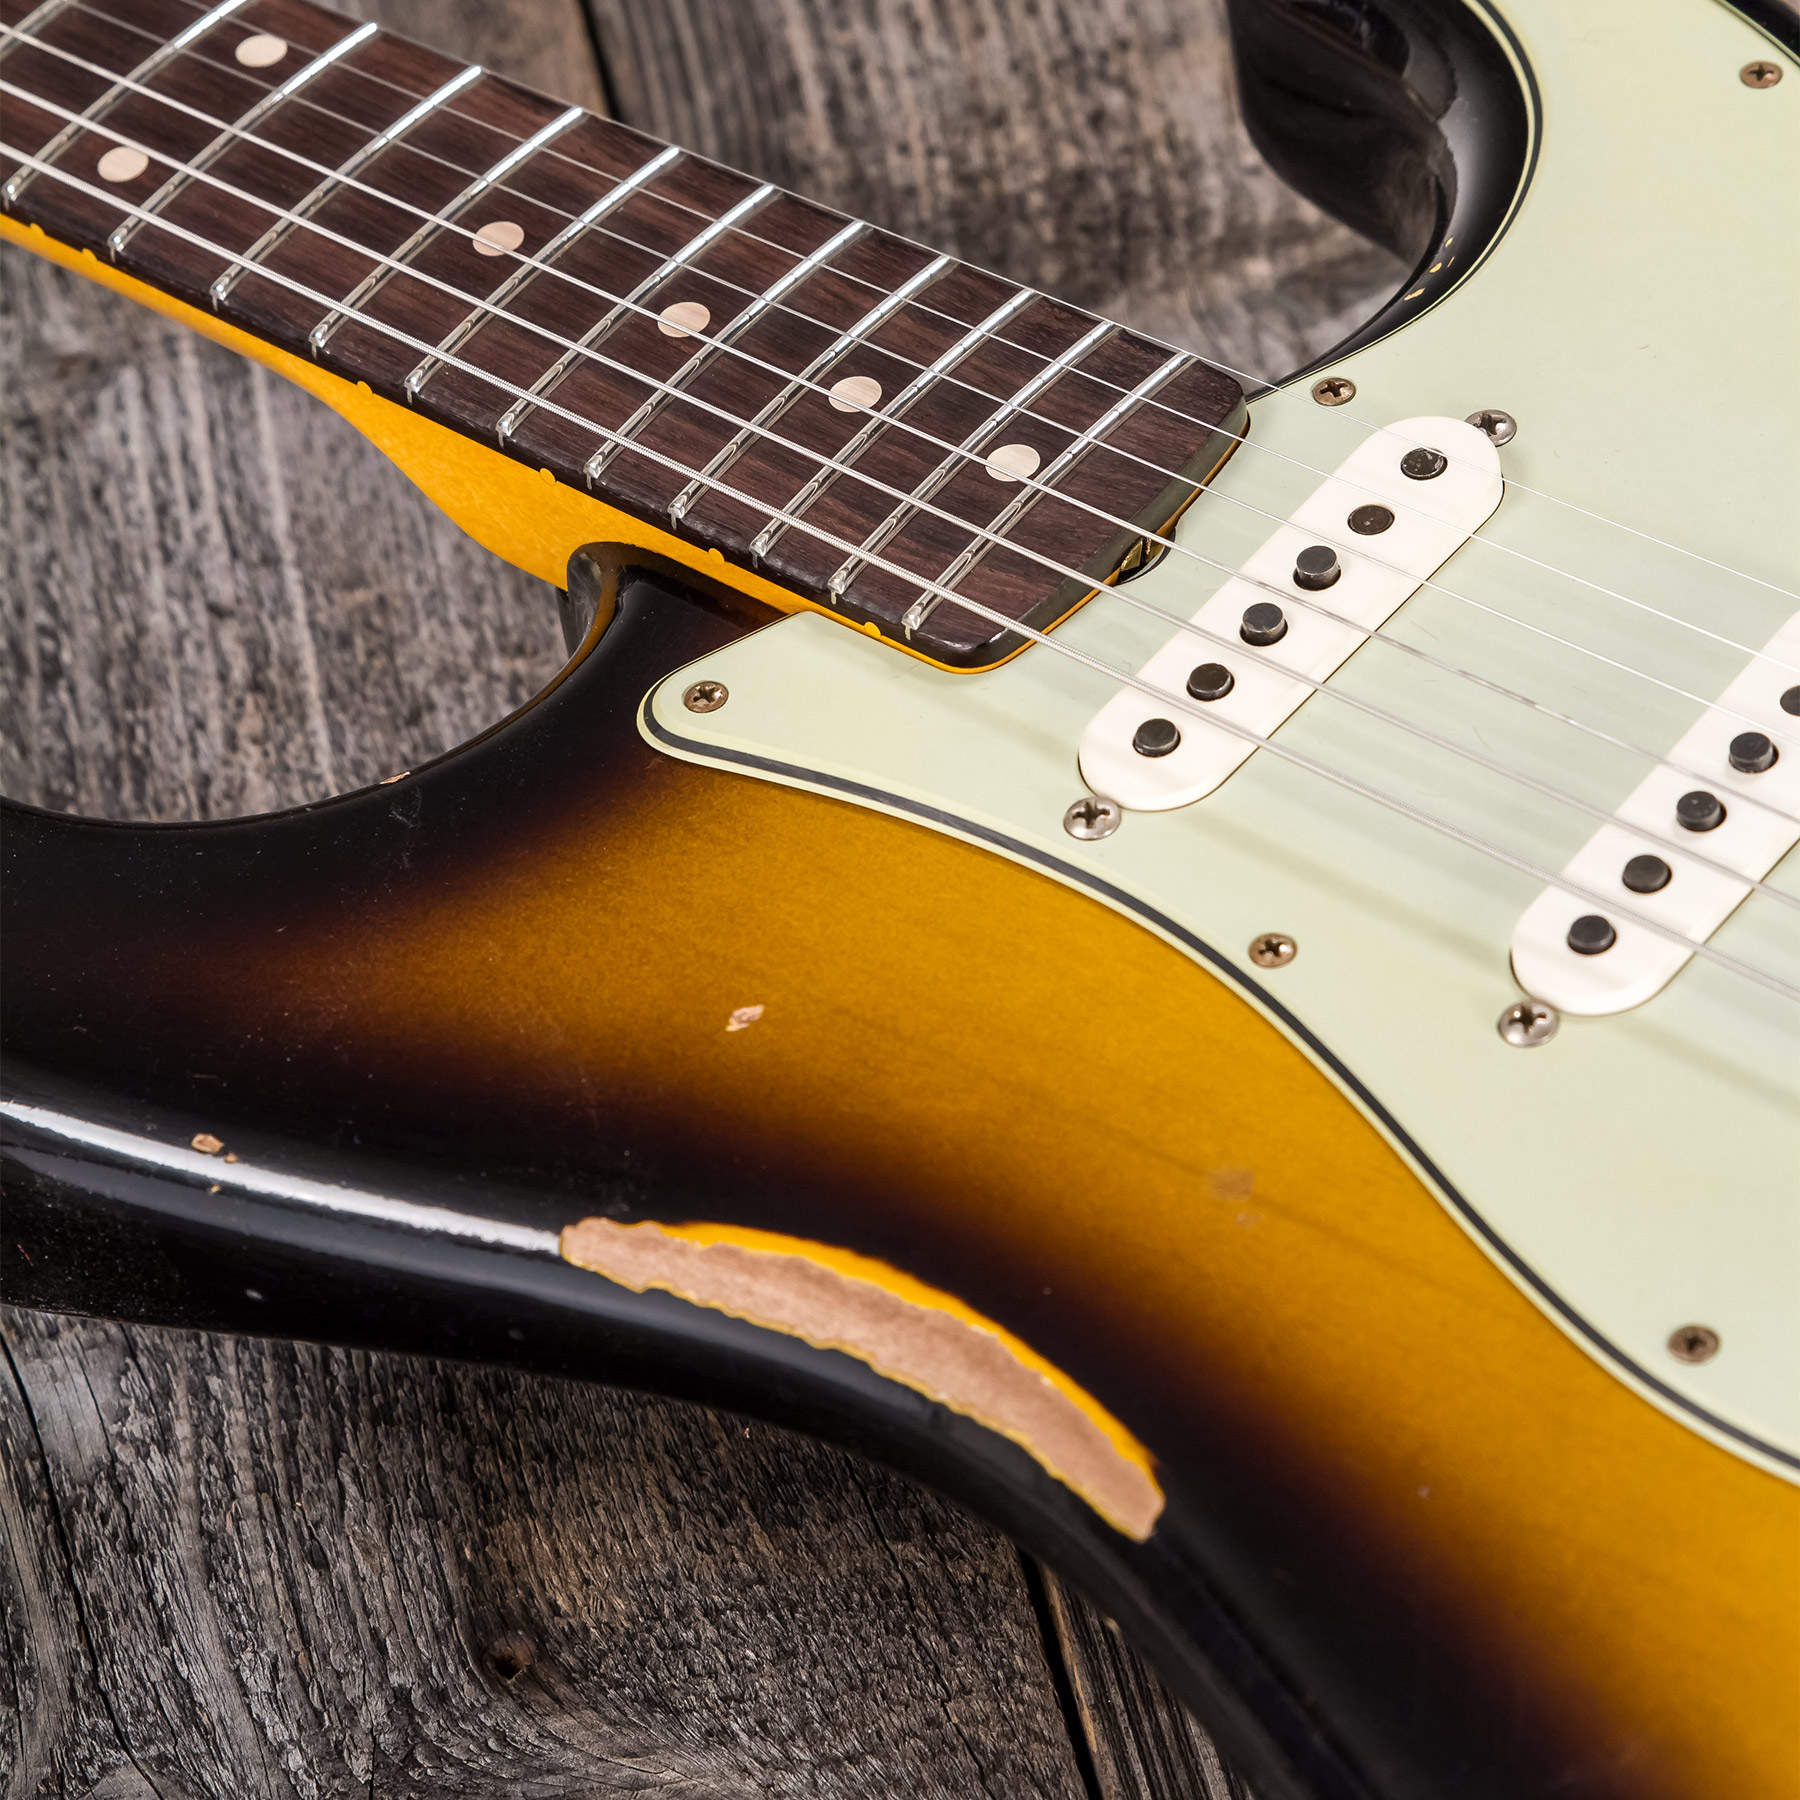 Fender Custom Shop Strat 1959 3s Trem Rw #r117661 - Relic 2-color Sunburst - Str shape electric guitar - Variation 7